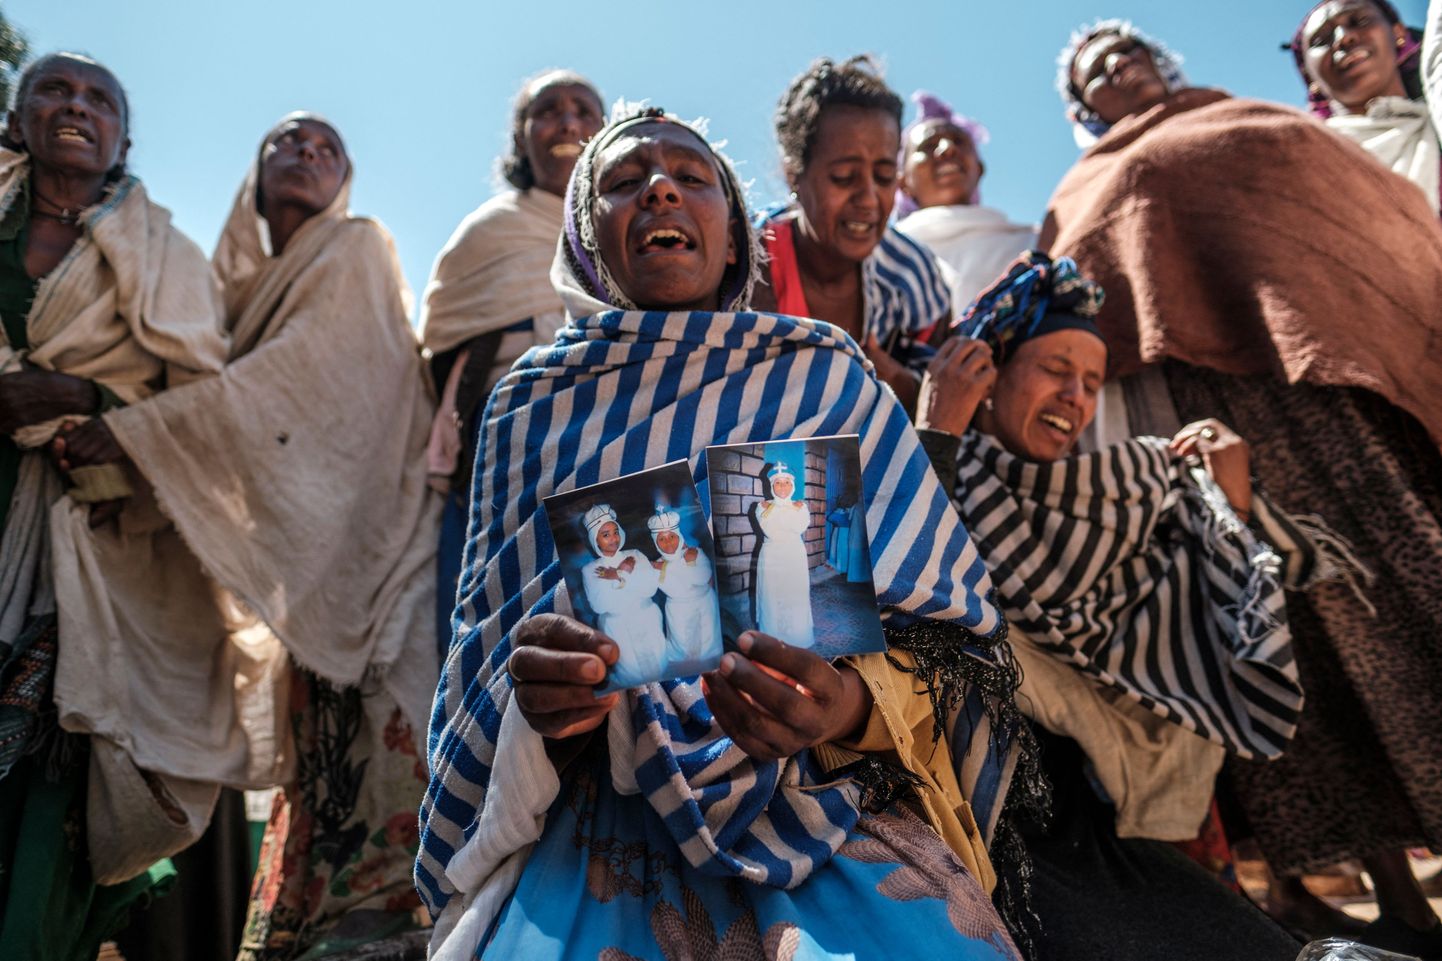 Dengola naised leinamas Eritrea sõdurite veretöös hukkunuid.